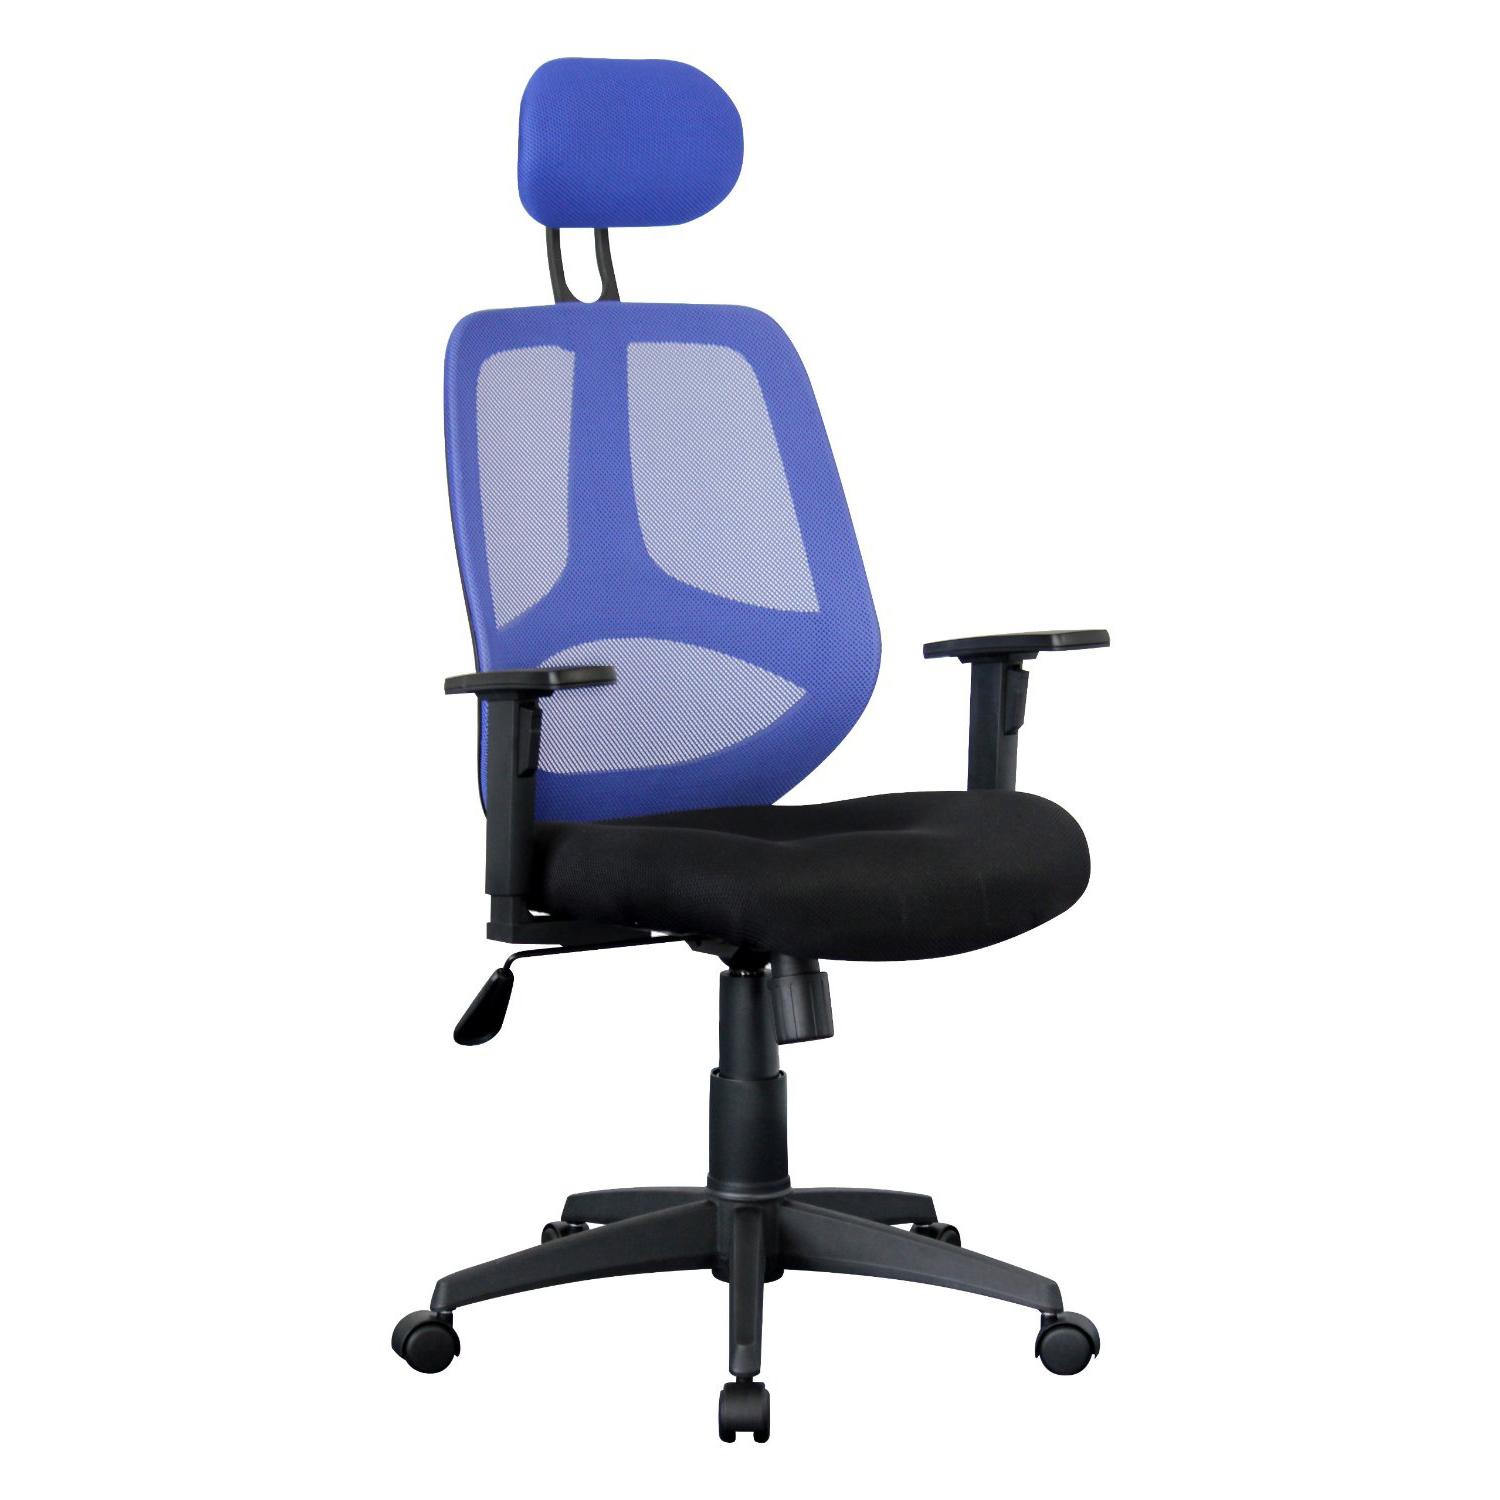 Ergonomischer Bürostuhl DRAKE, verstellbare Kopfstütze und Armlehnen, atmungsaktiver Netzbezug, Farbe Blau / Schwarz